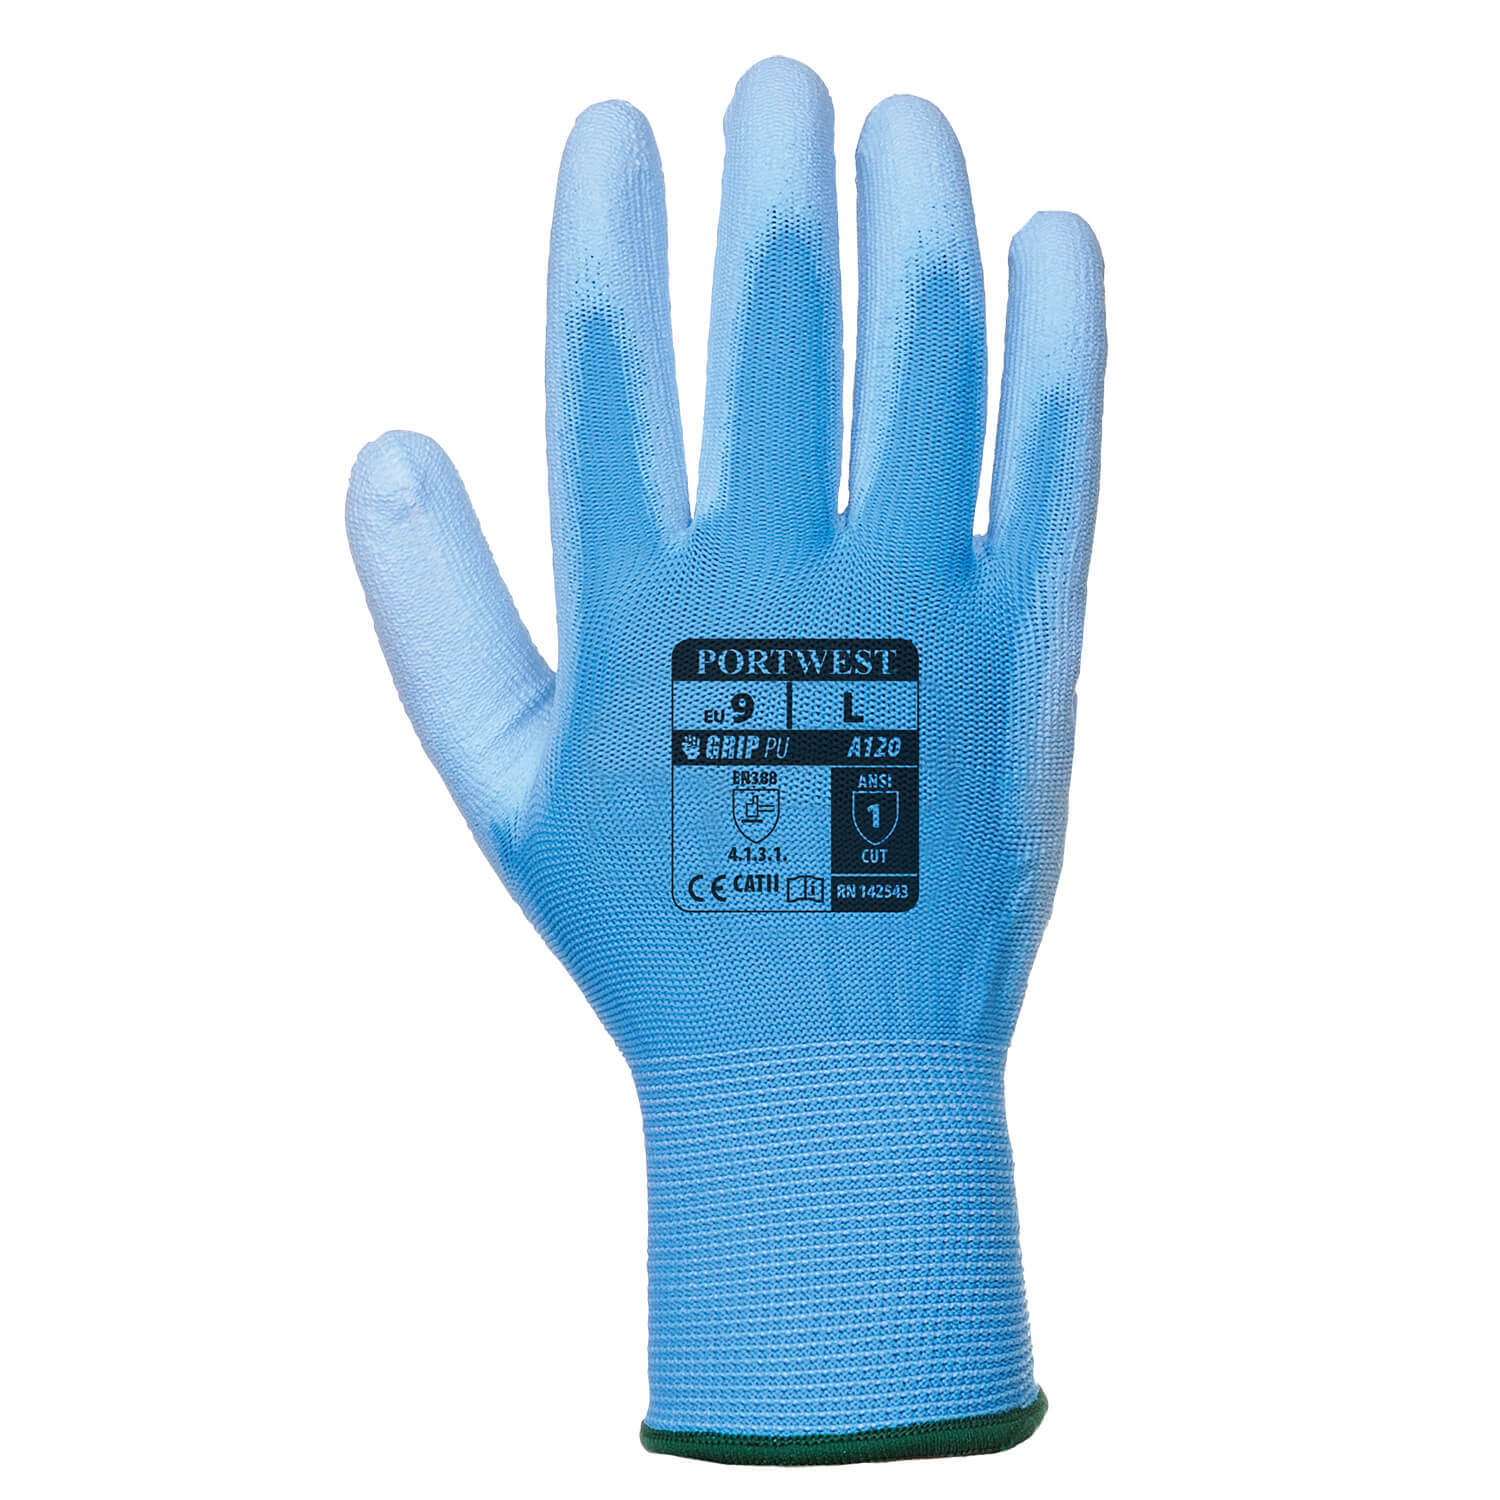 Image of Portwest PU Palm General Handling Grip Gloves Blue M